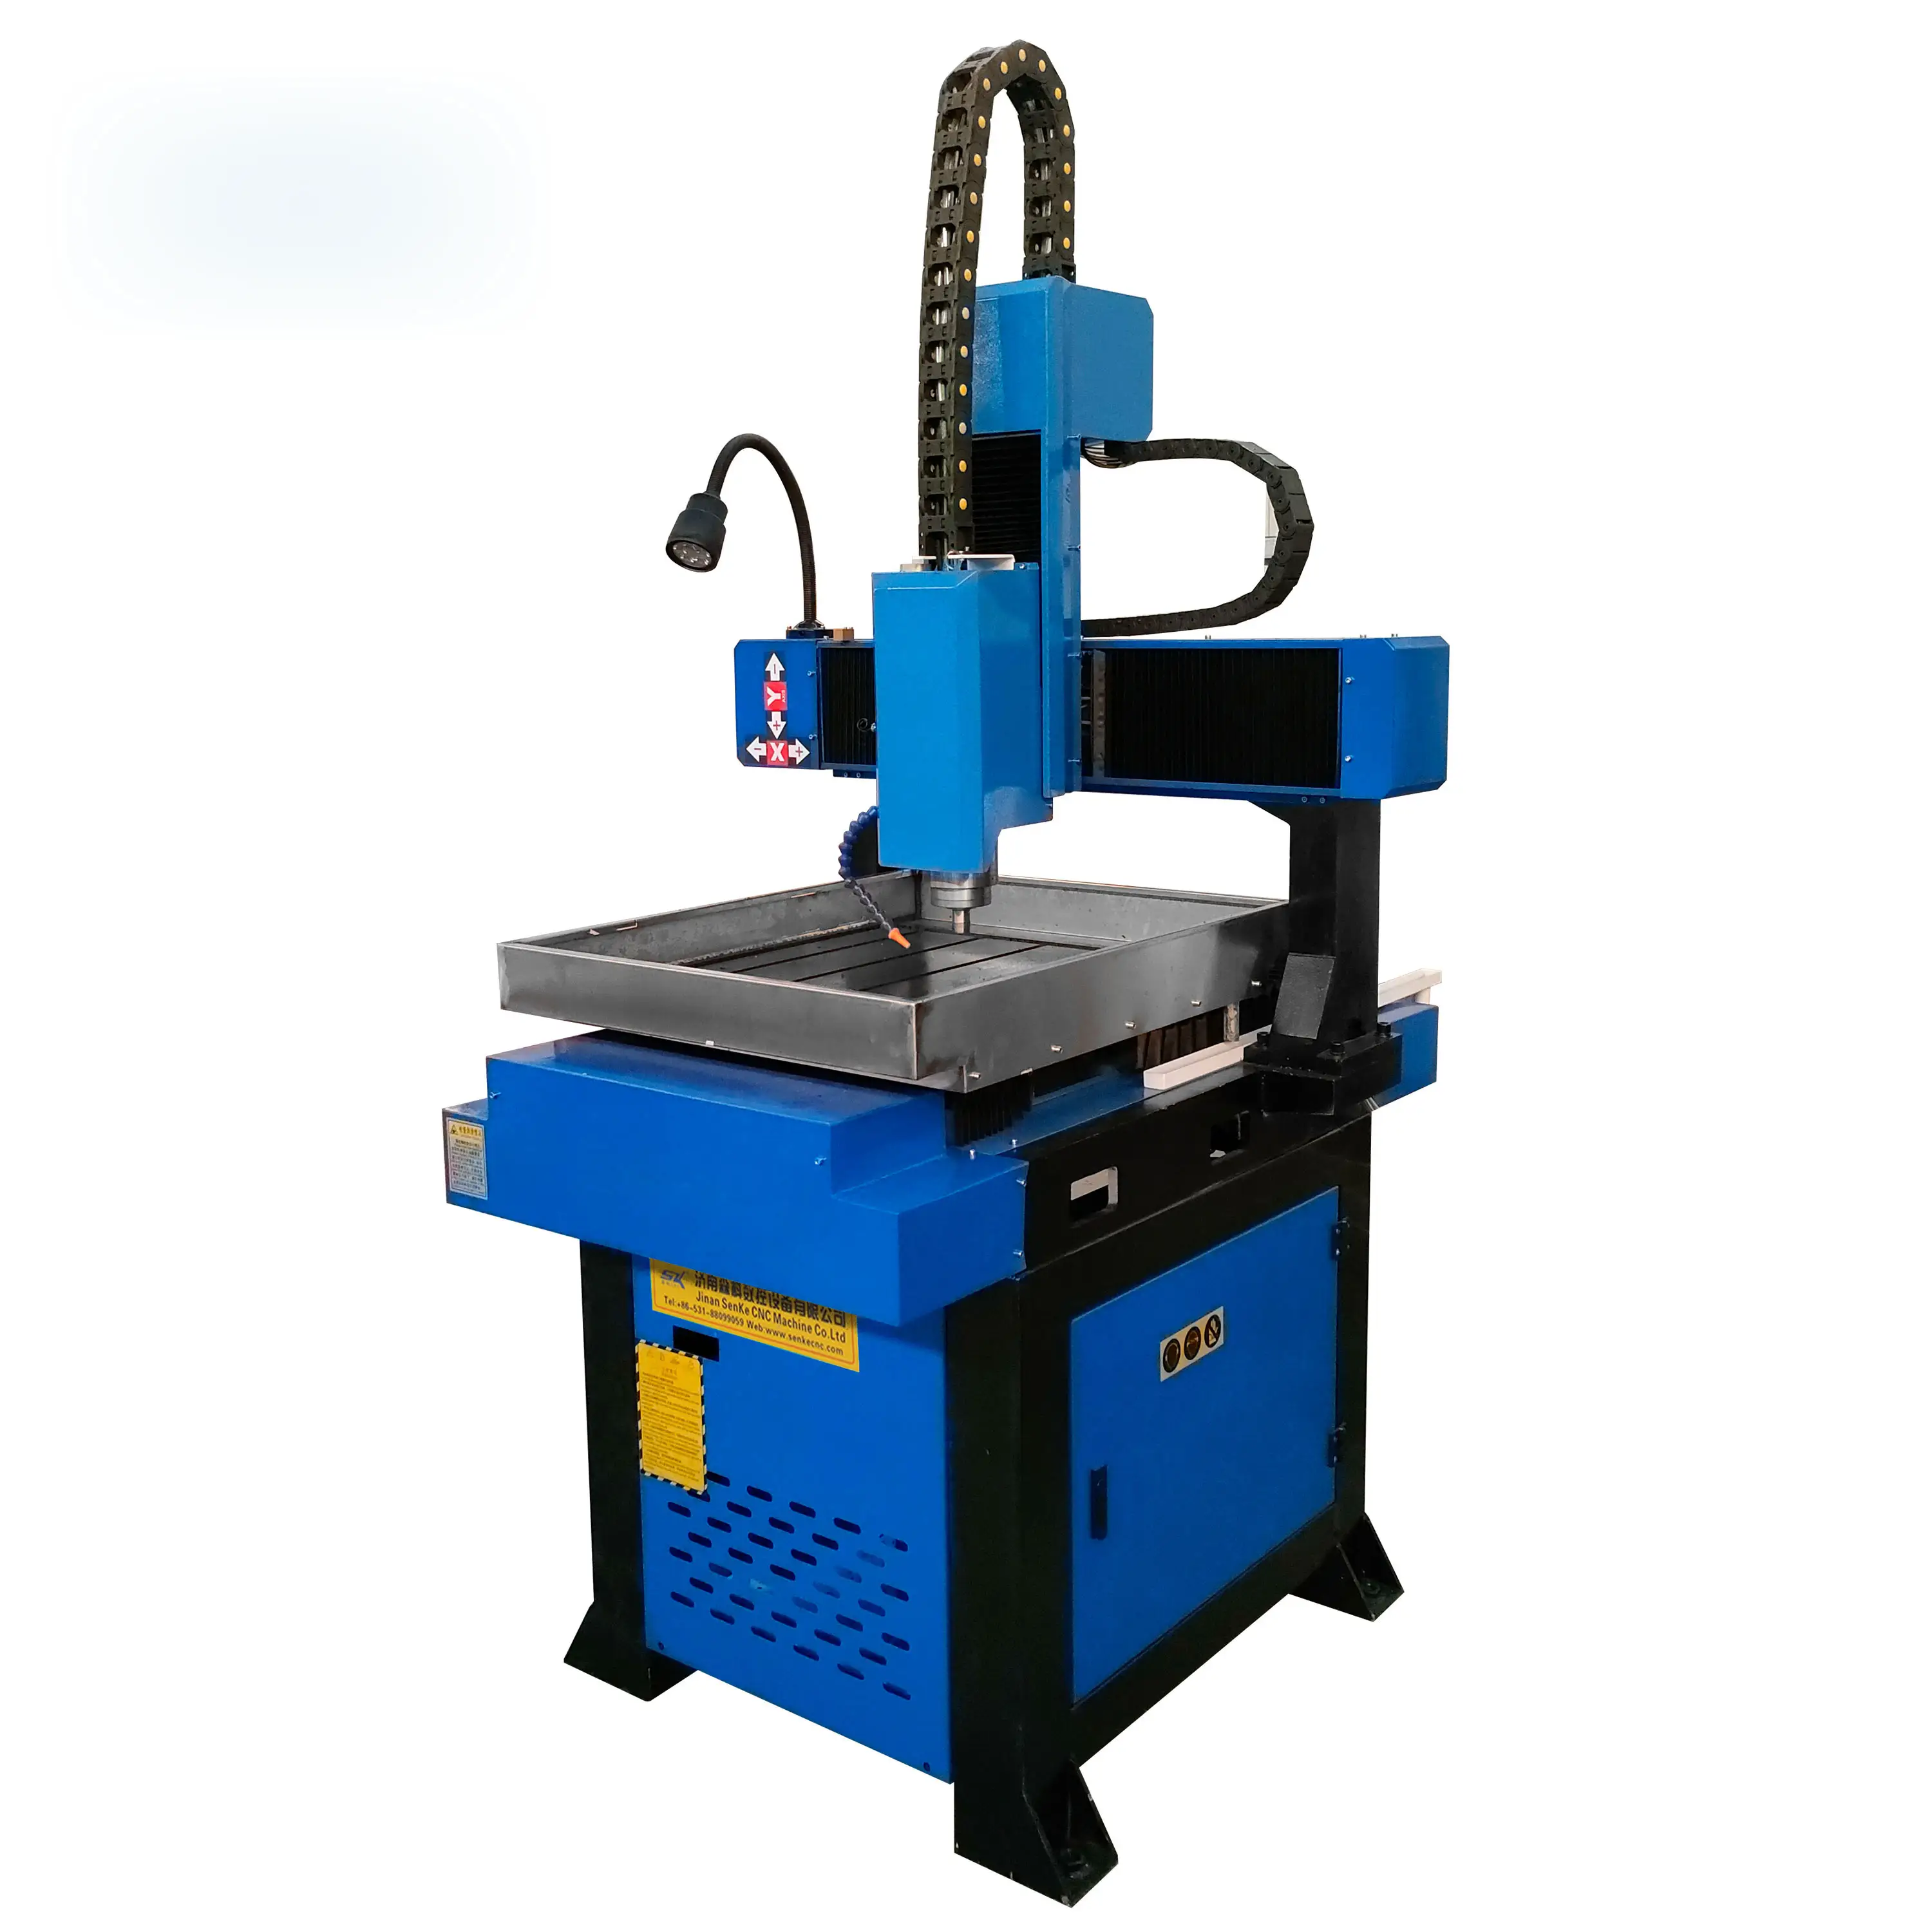 6090 CNC routeur métal moule faisant coupe gravure machine de travail pour bois d'aluminium